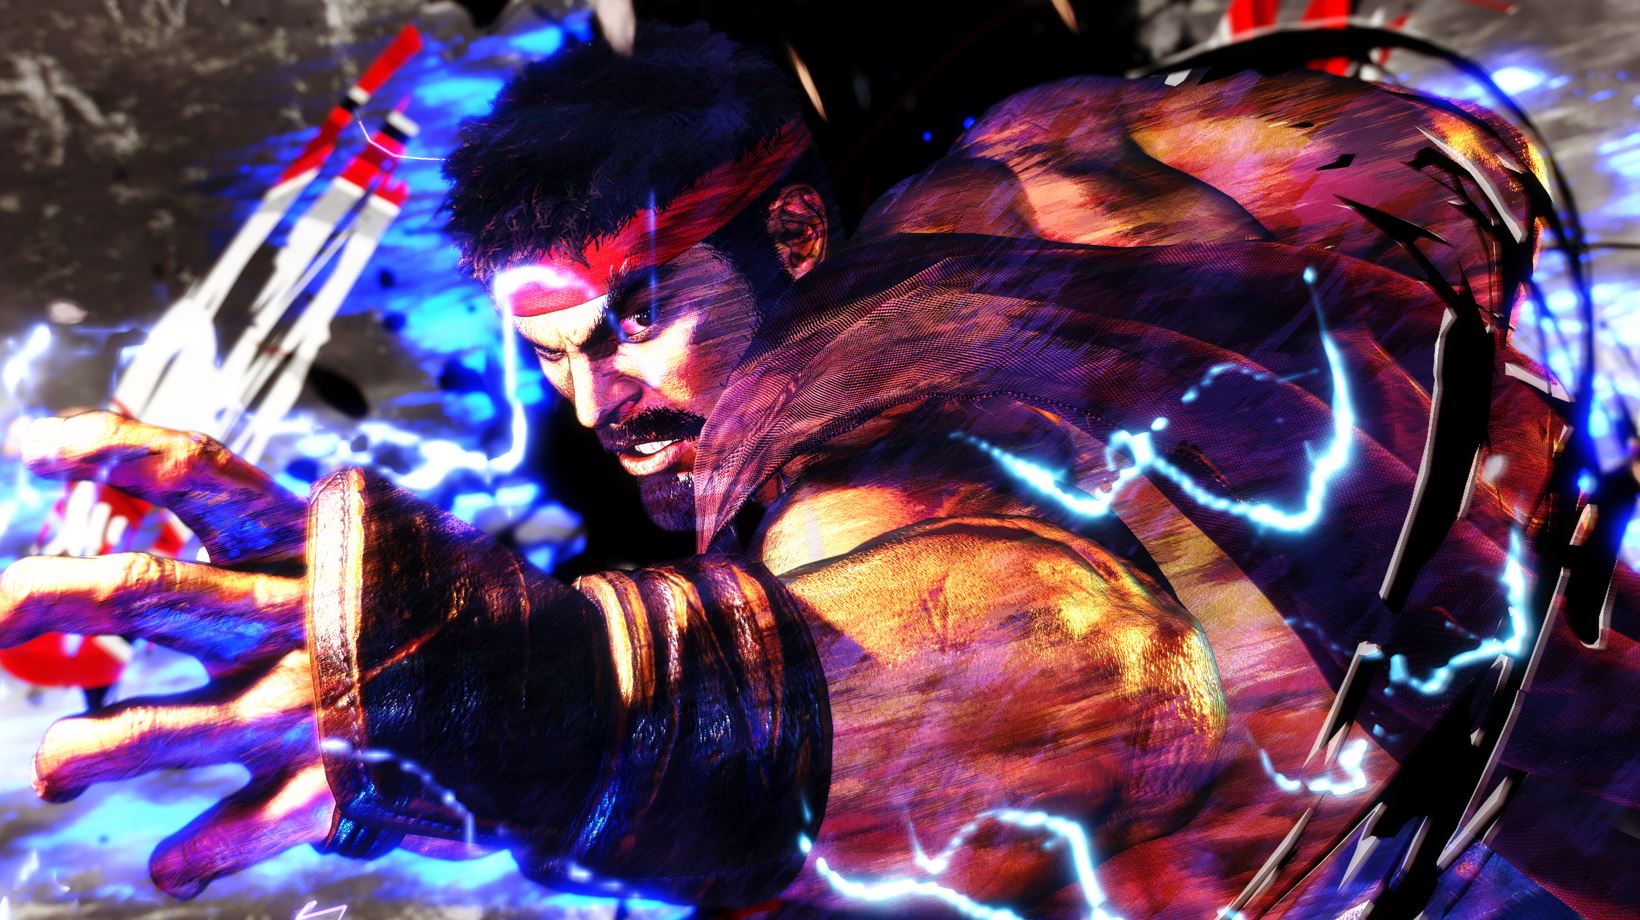 Street Fighter 6: Veja novidades do game que terá mundo aberto - V9 TV  Uberlândia